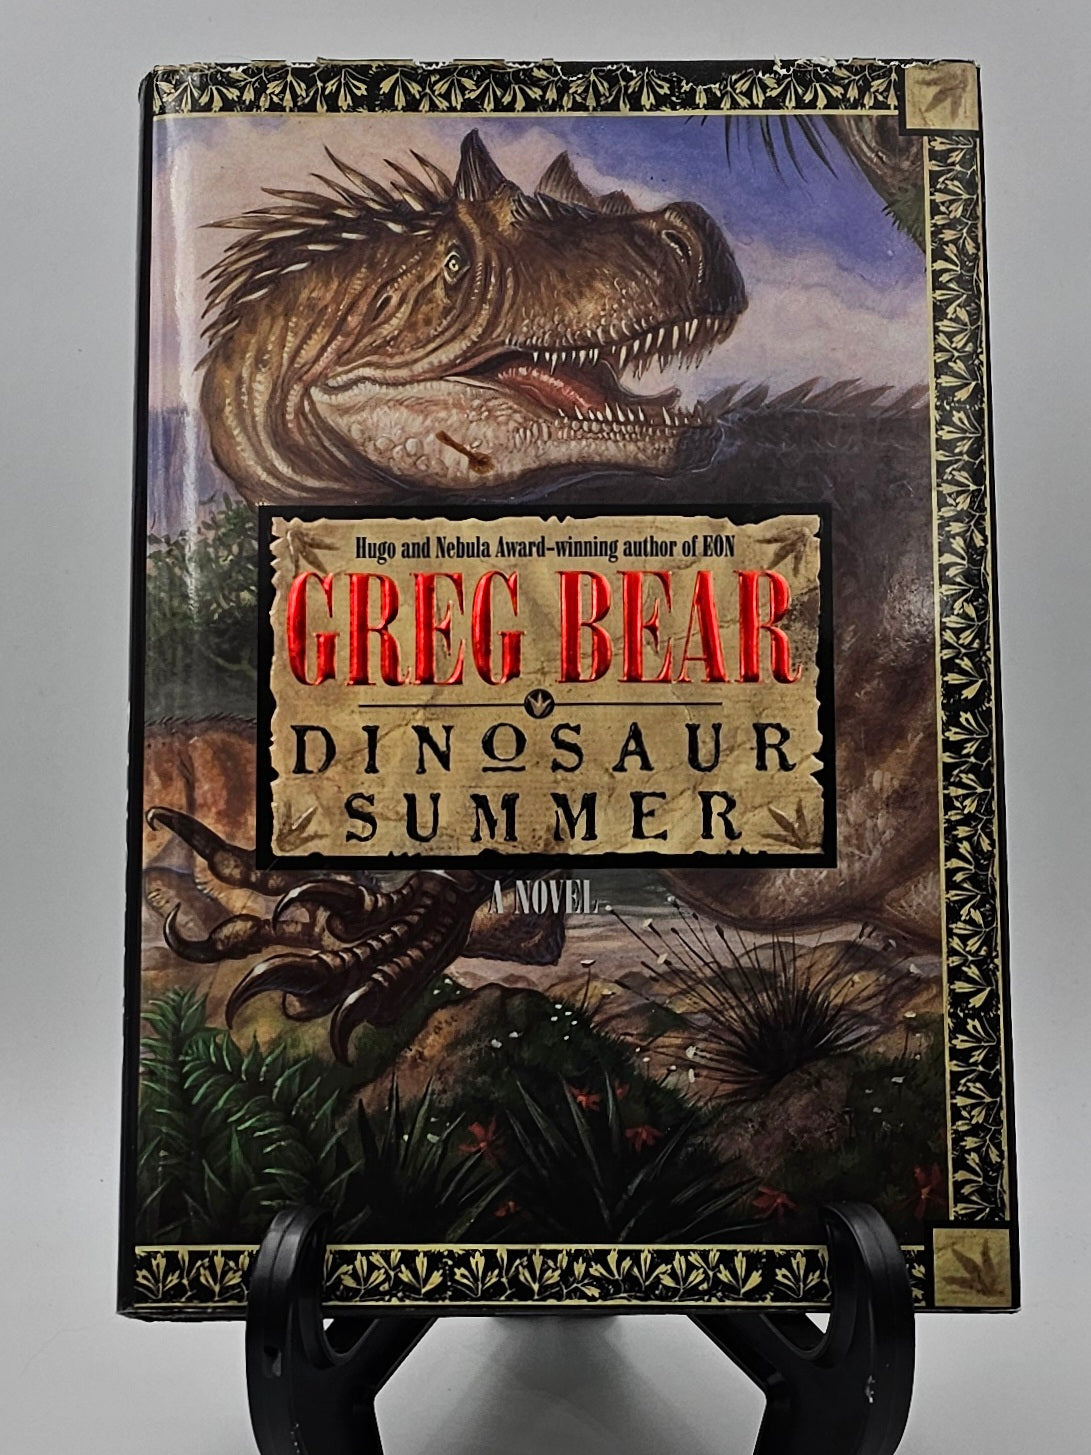 Dinosaur Summer by Greg Bear